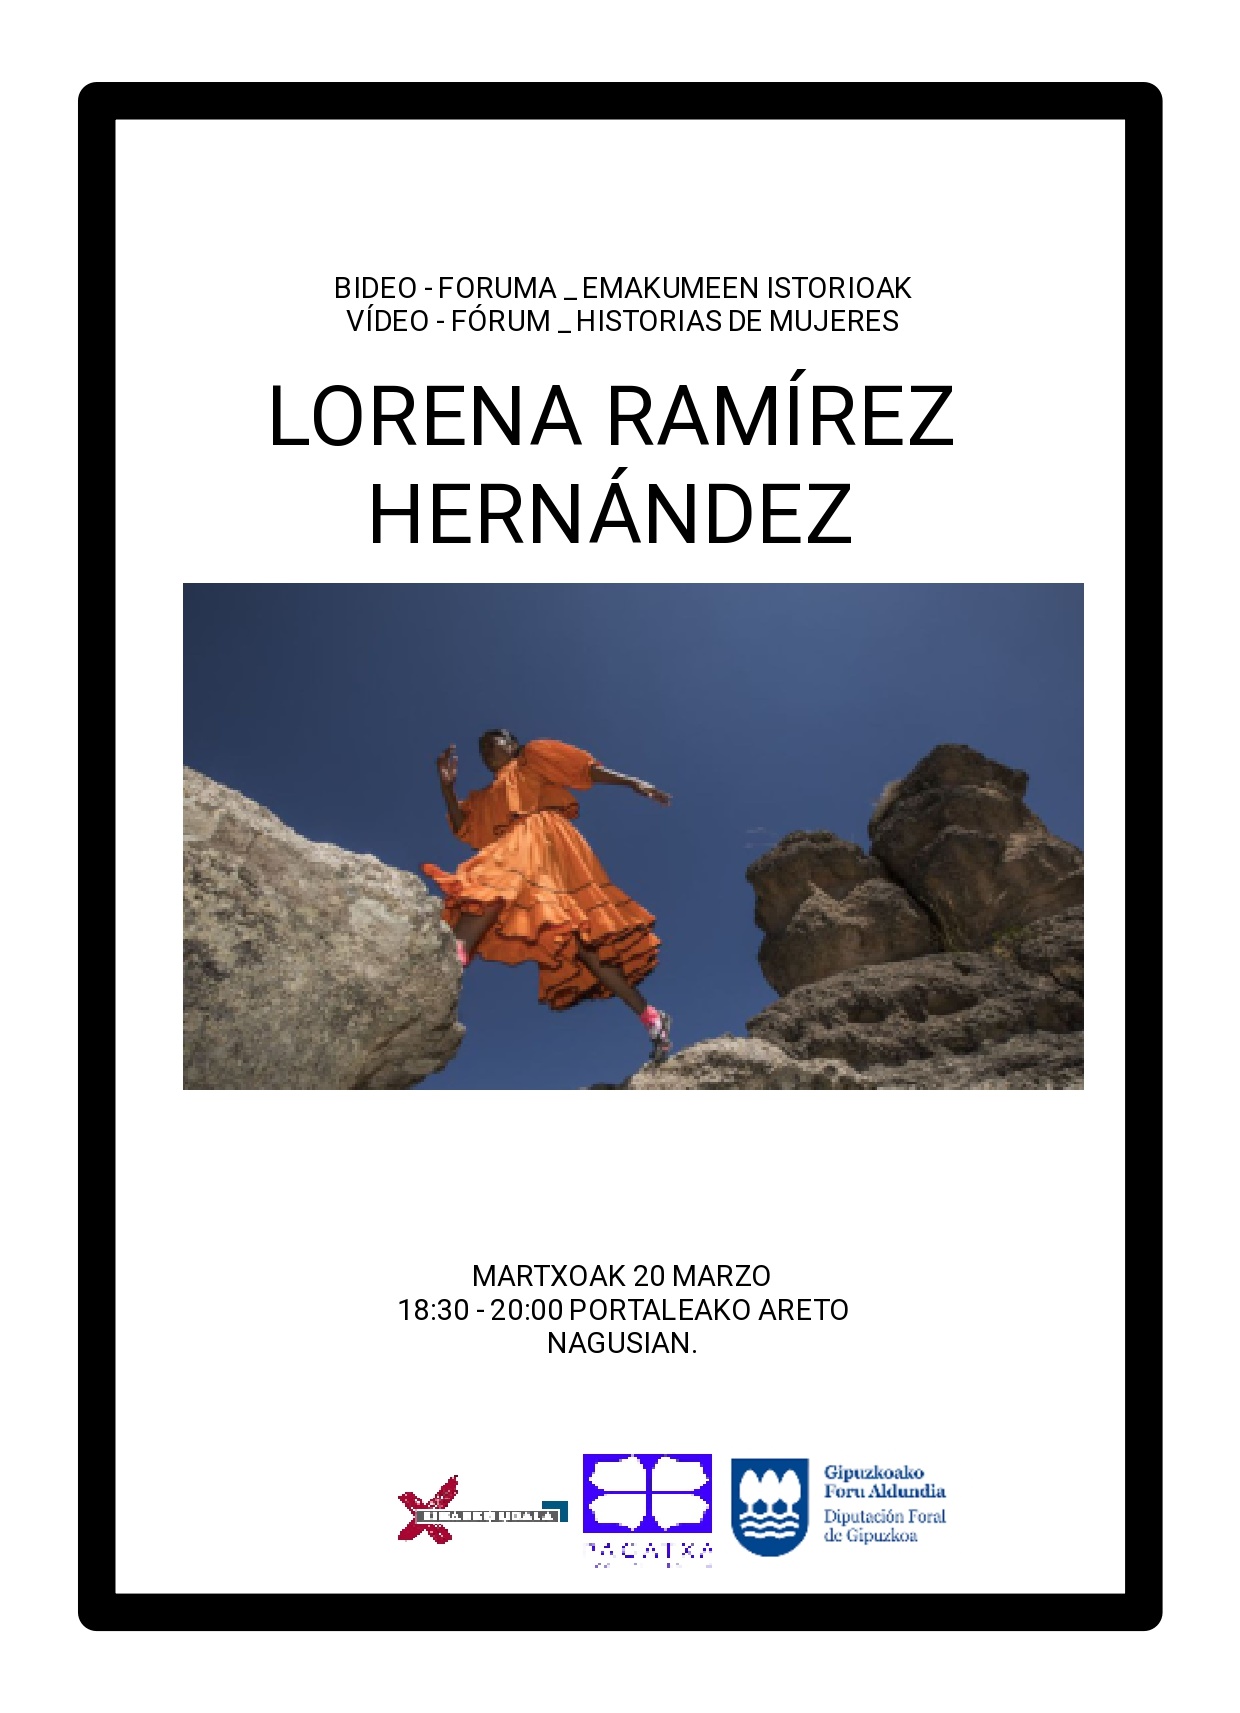 "Lorena Ramírez Hernández", Emakumeen Istorioen saio berria, Pagatxa Emakumeen Elkarteak antolatua